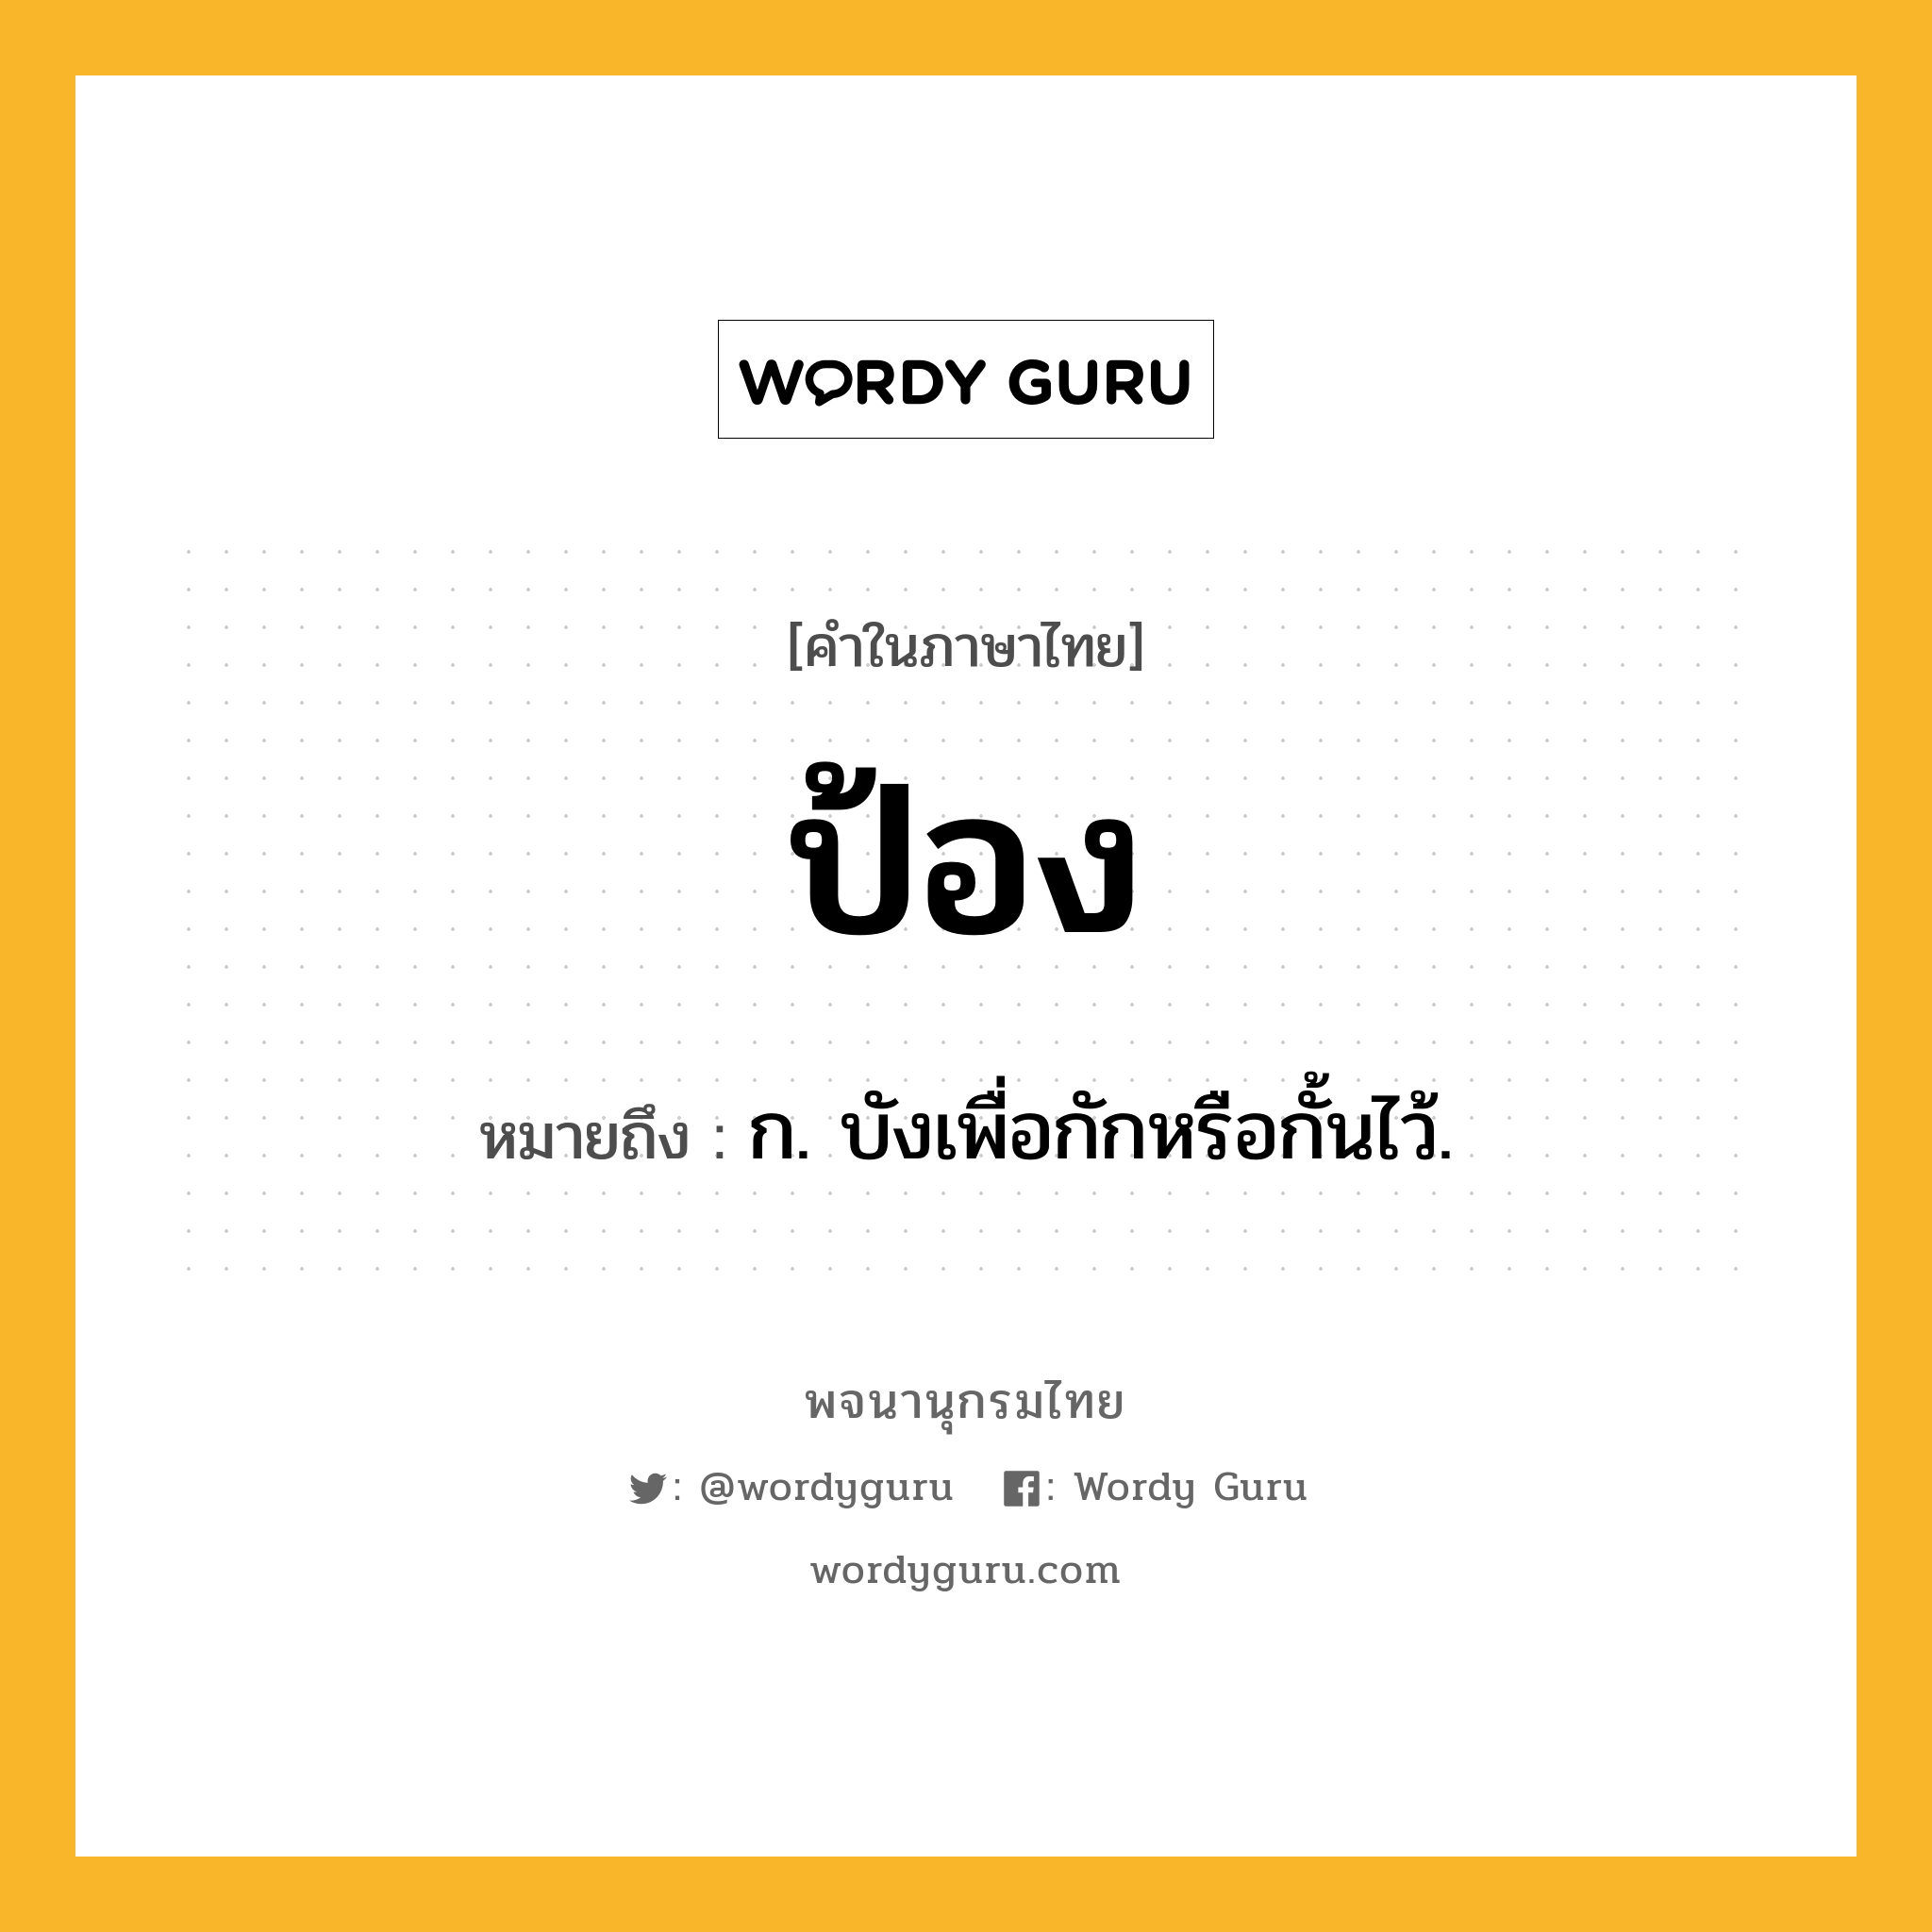 ป้อง ความหมาย หมายถึงอะไร?, คำในภาษาไทย ป้อง หมายถึง ก. บังเพื่อกักหรือกั้นไว้.